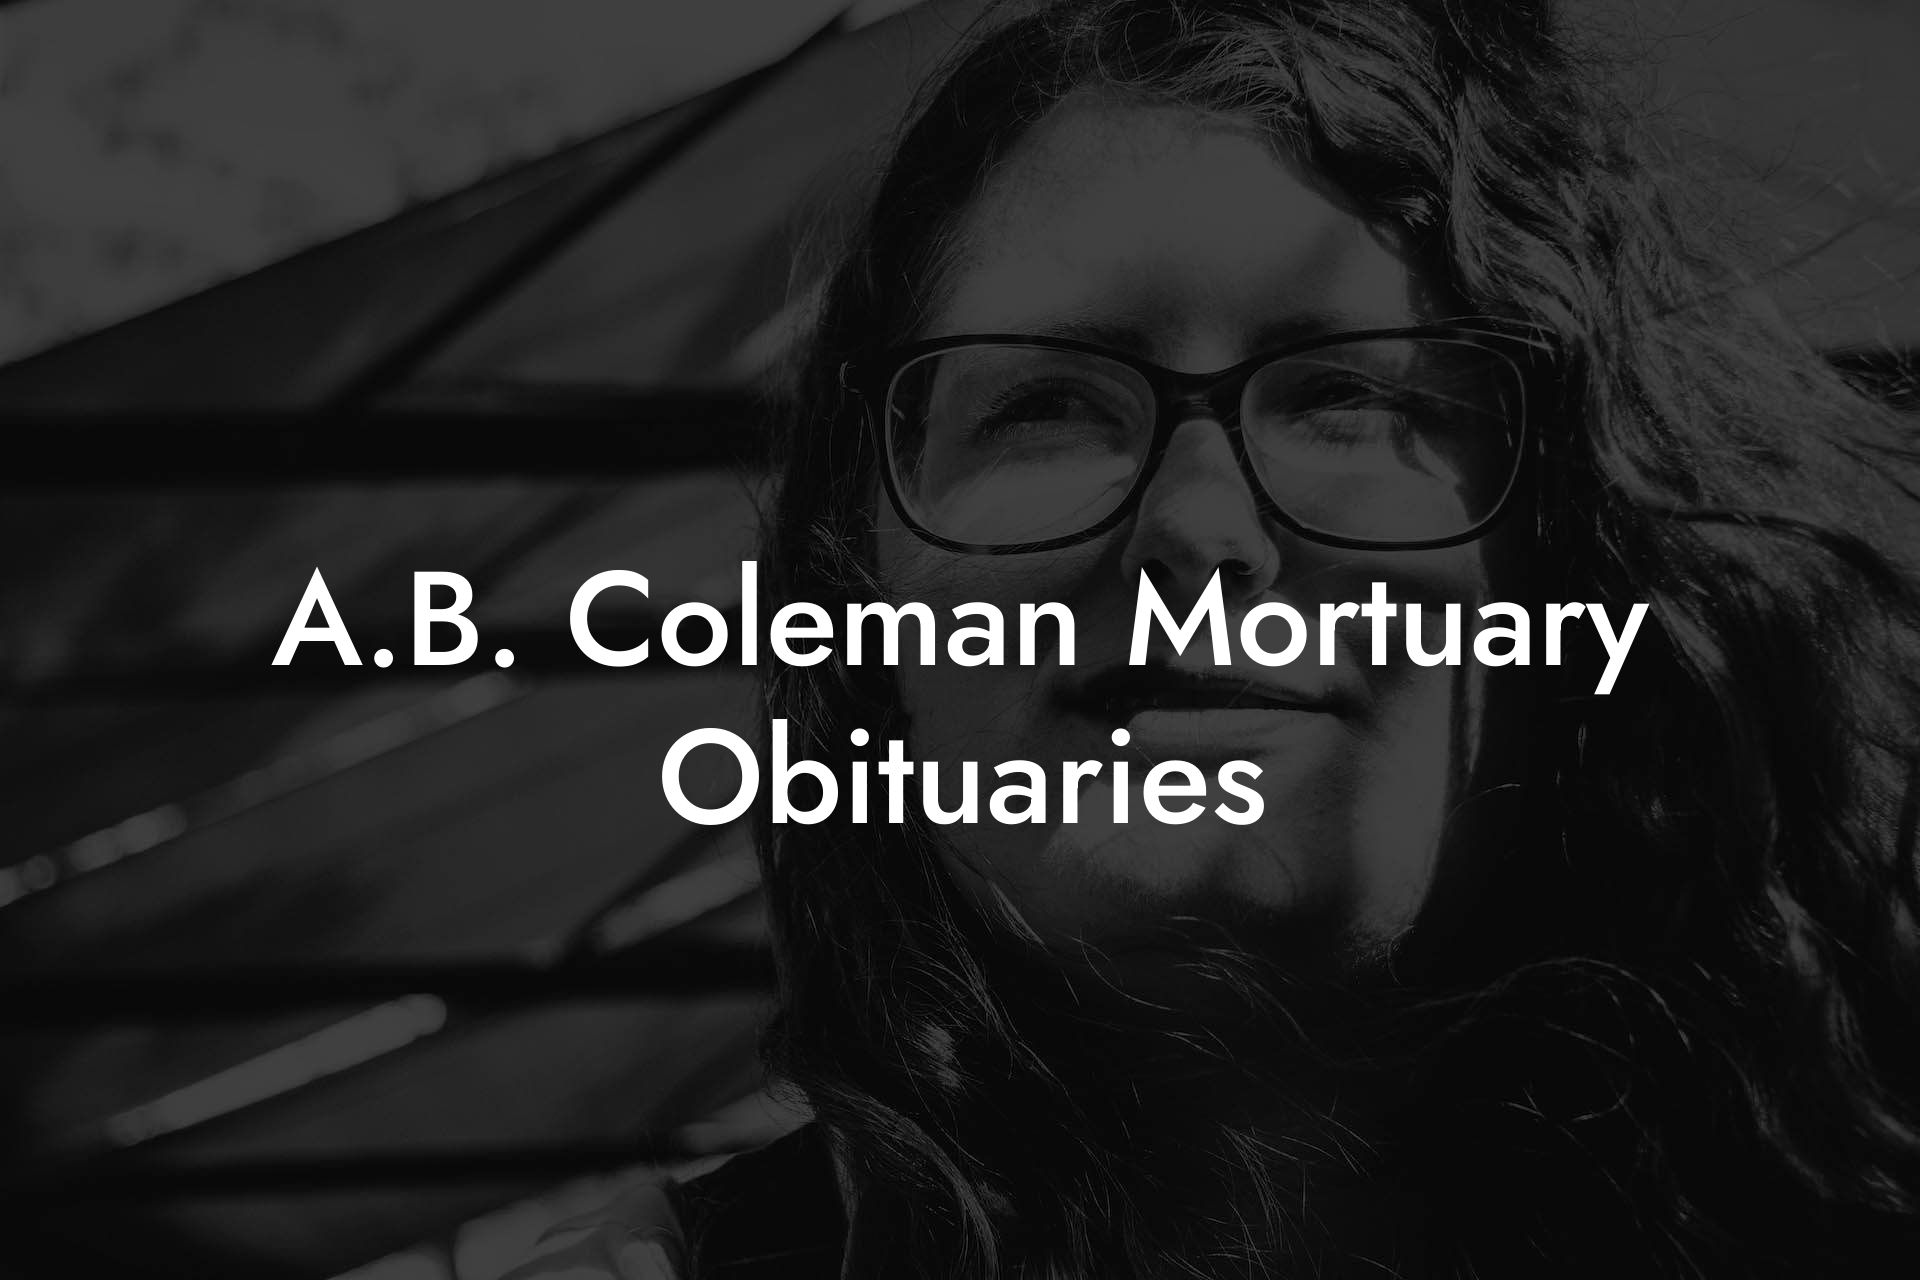 A.B. Coleman Mortuary Obituaries